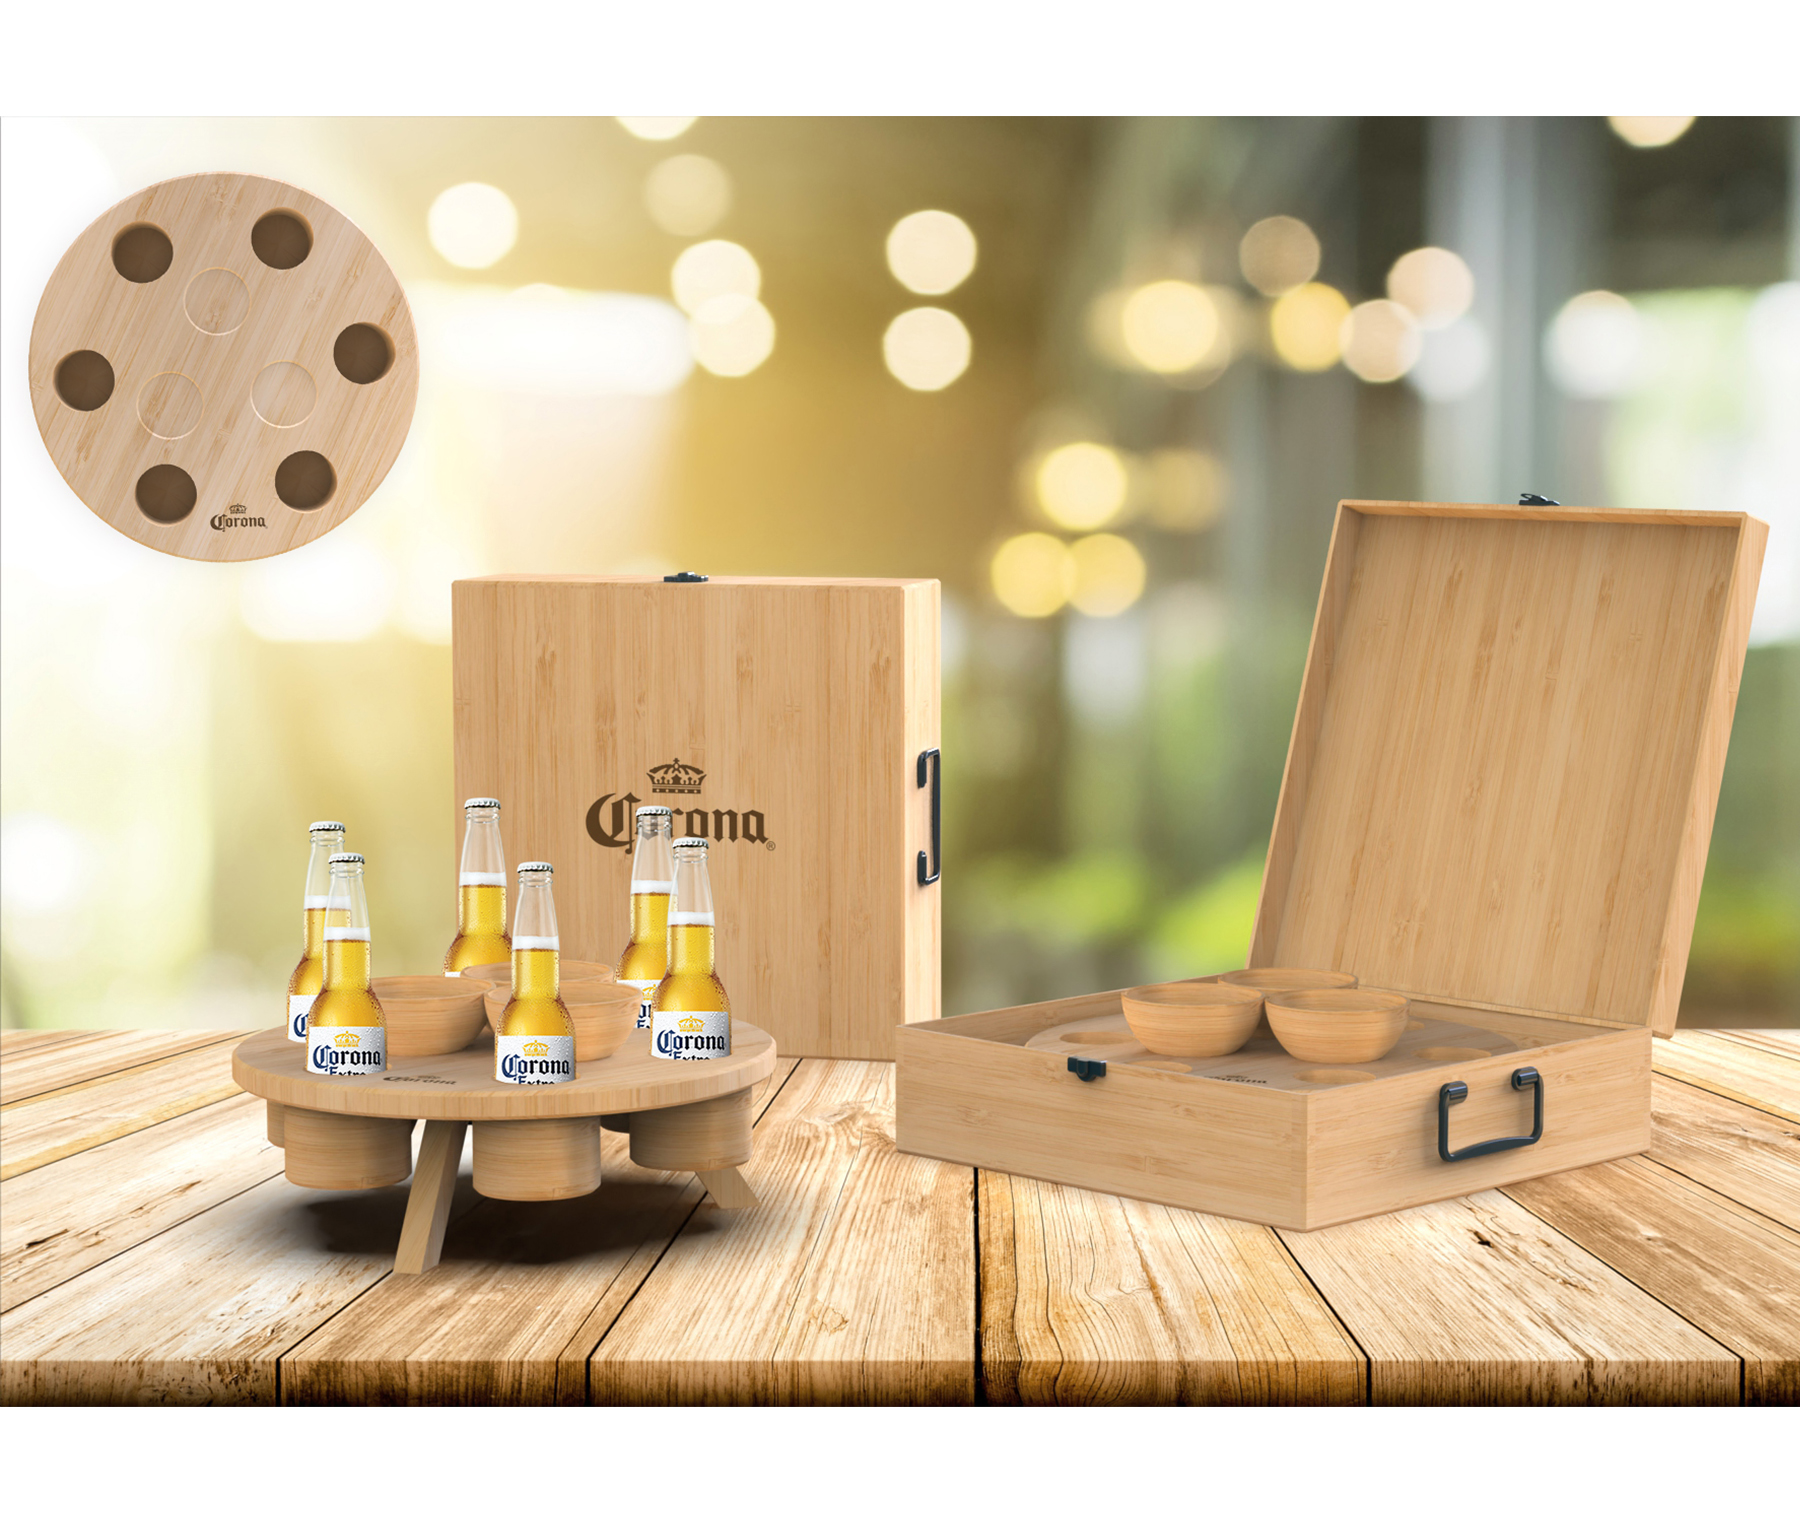 Bandeja con 6 cavidades para botellas, 3 cuencos y 3 patas para convertir en mesa, presentado en caja para transportar. Todo fabricado en bambú.